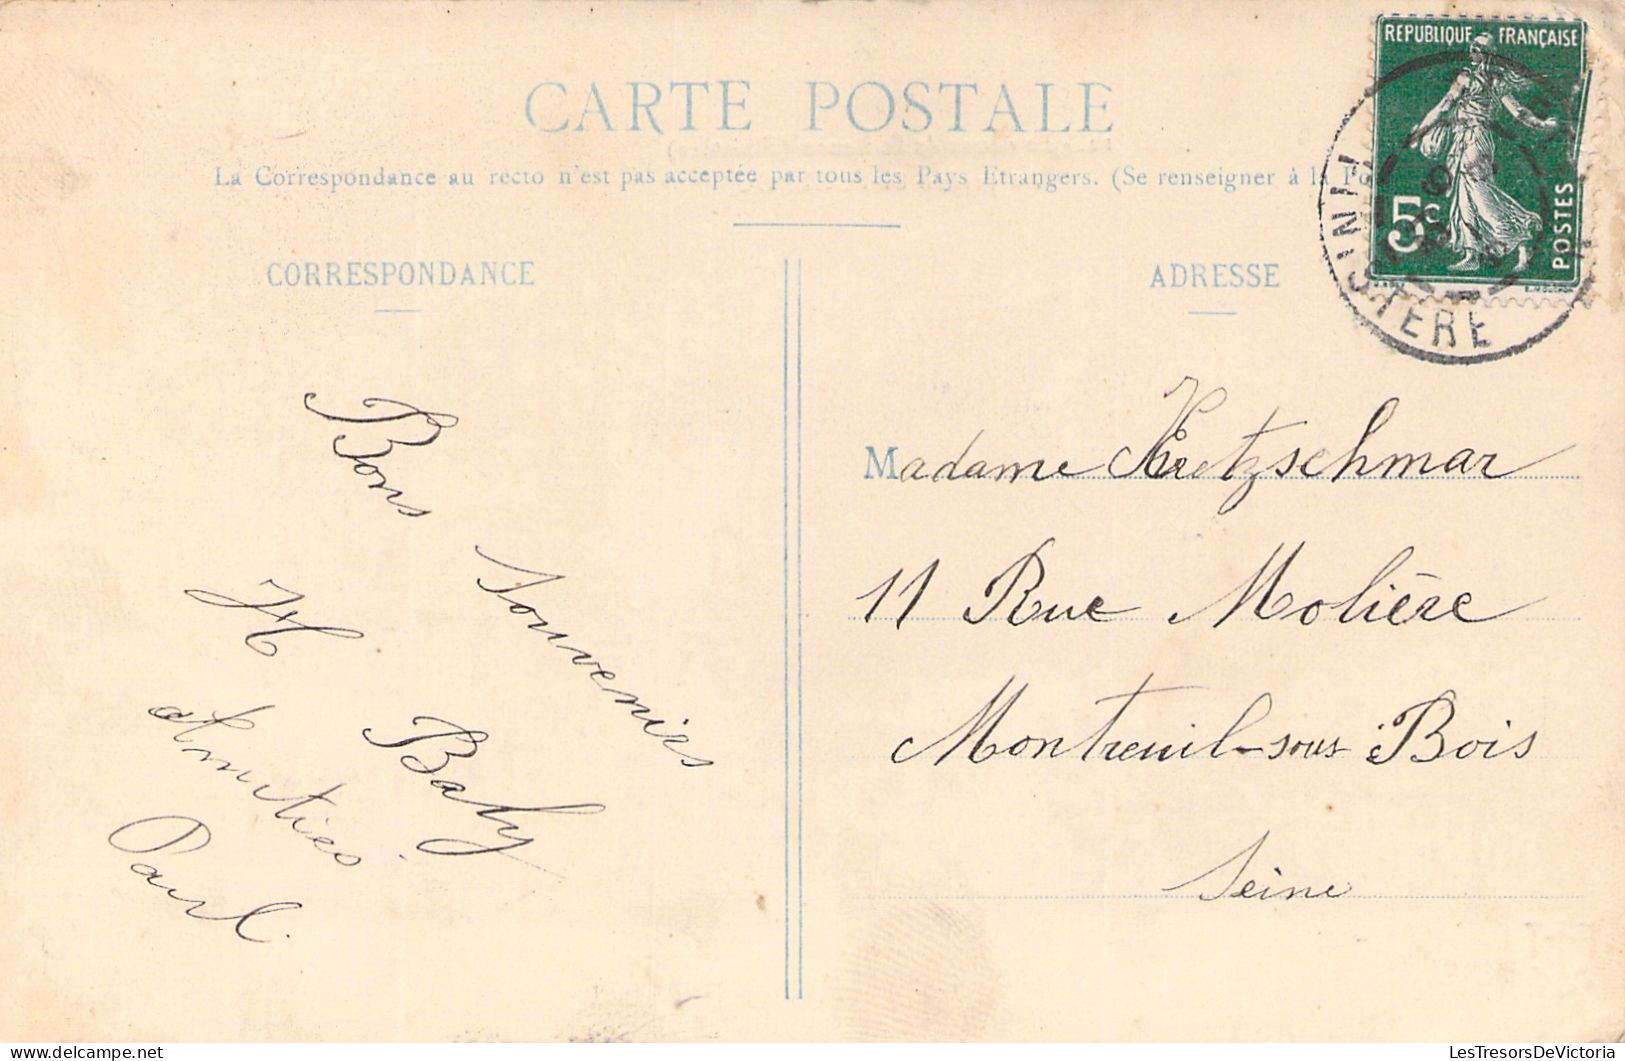 FRANCE - Environs De St Renan - Au Pardon De Bodénou - Scene De Village - Rassemblement - Carte Postale Ancienne - Autres & Non Classés